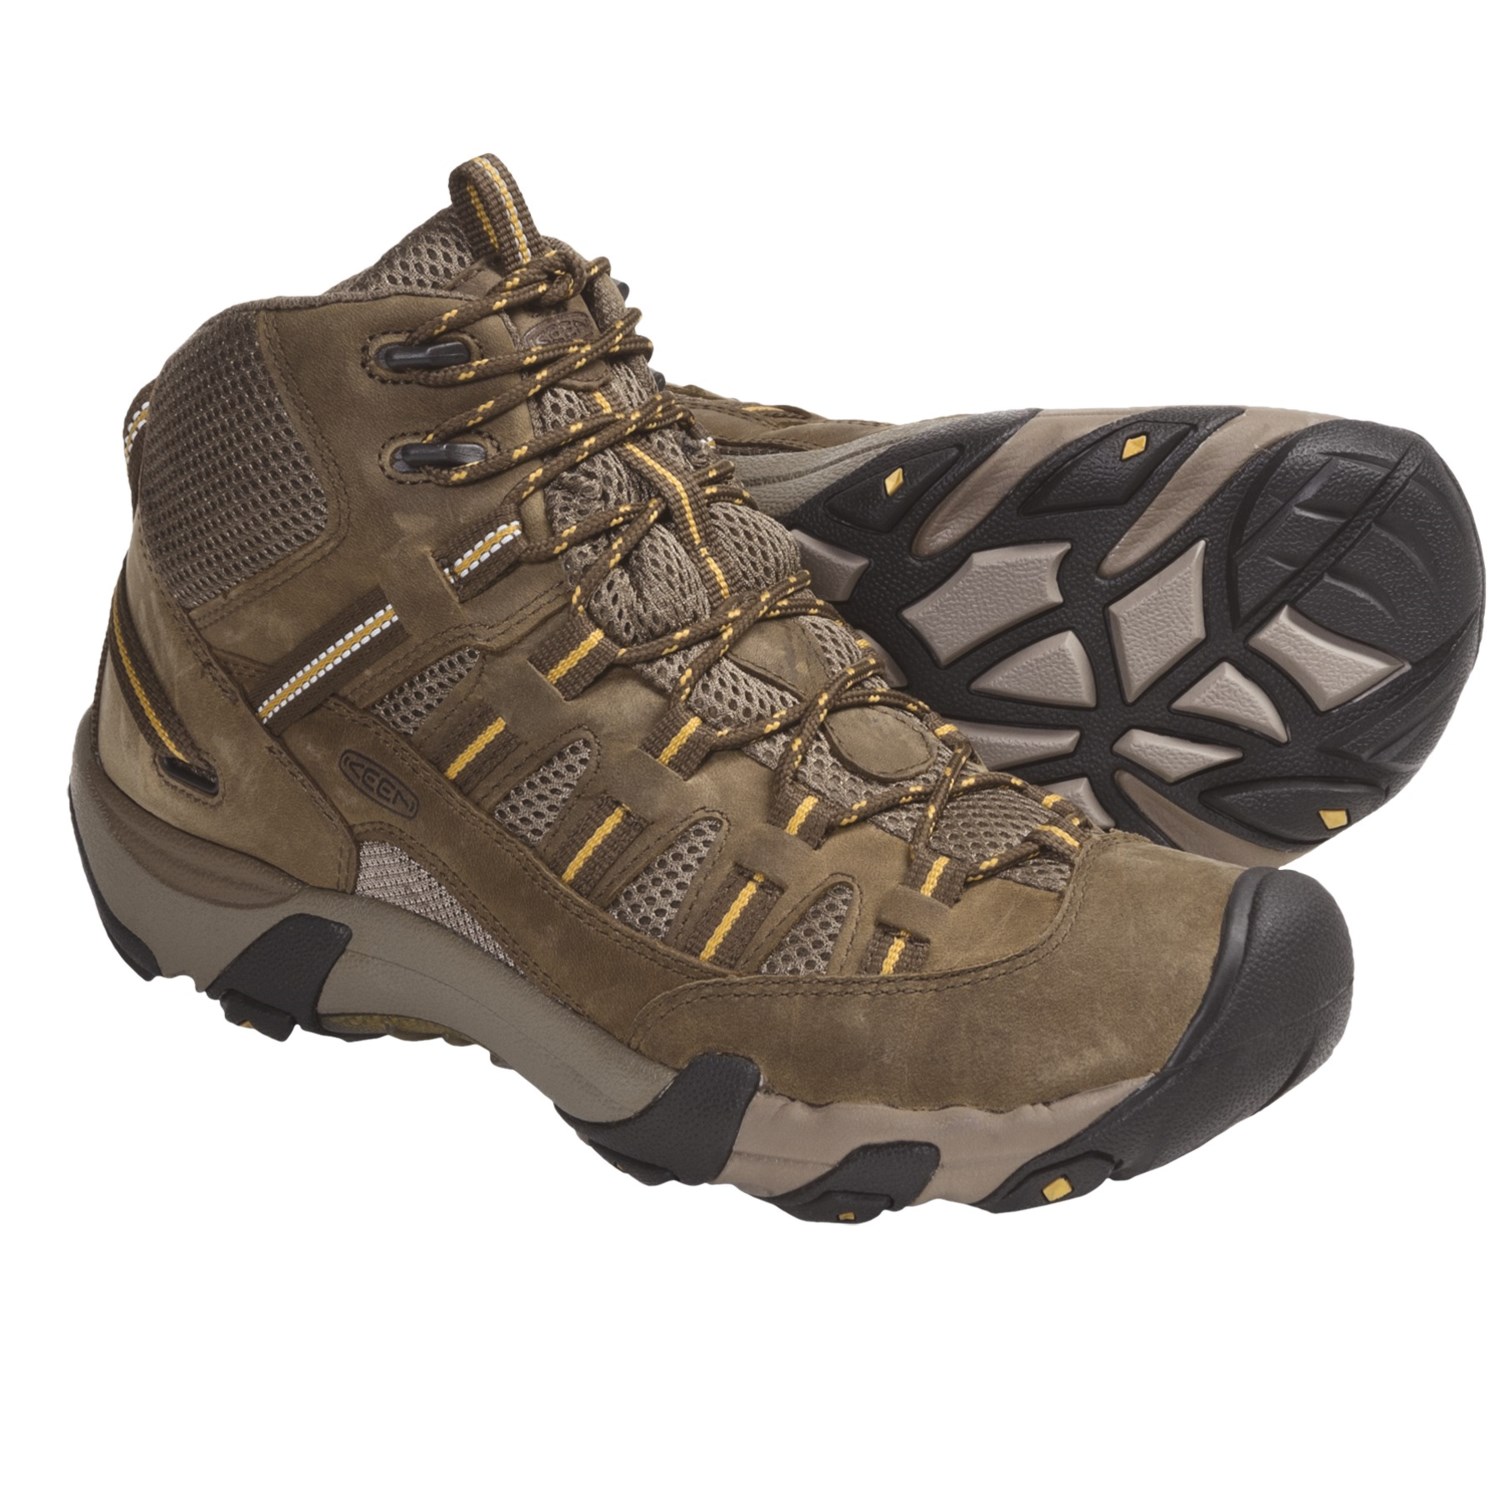 Shoes â€º Men's Footwear â€º Men's Boots â€º Men's Hiking Boots